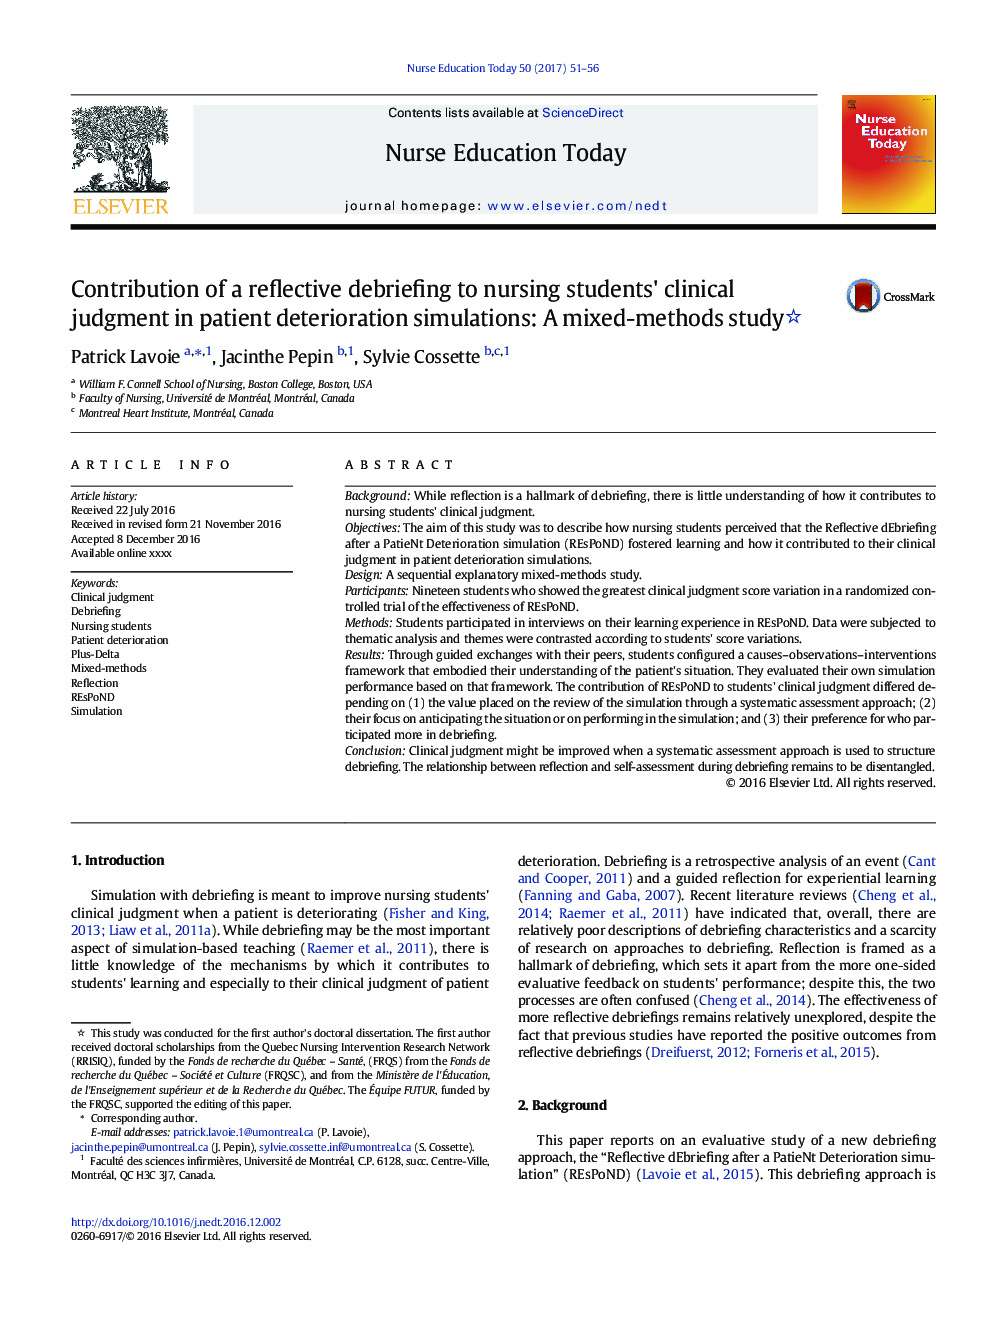 مشارکت در یک بررسی انعکاسی در قضاوت بالینی دانشجویان پرستاری در شبیه سازی های بدتر شدن بیماران: یک مطالعه ترکیبی 